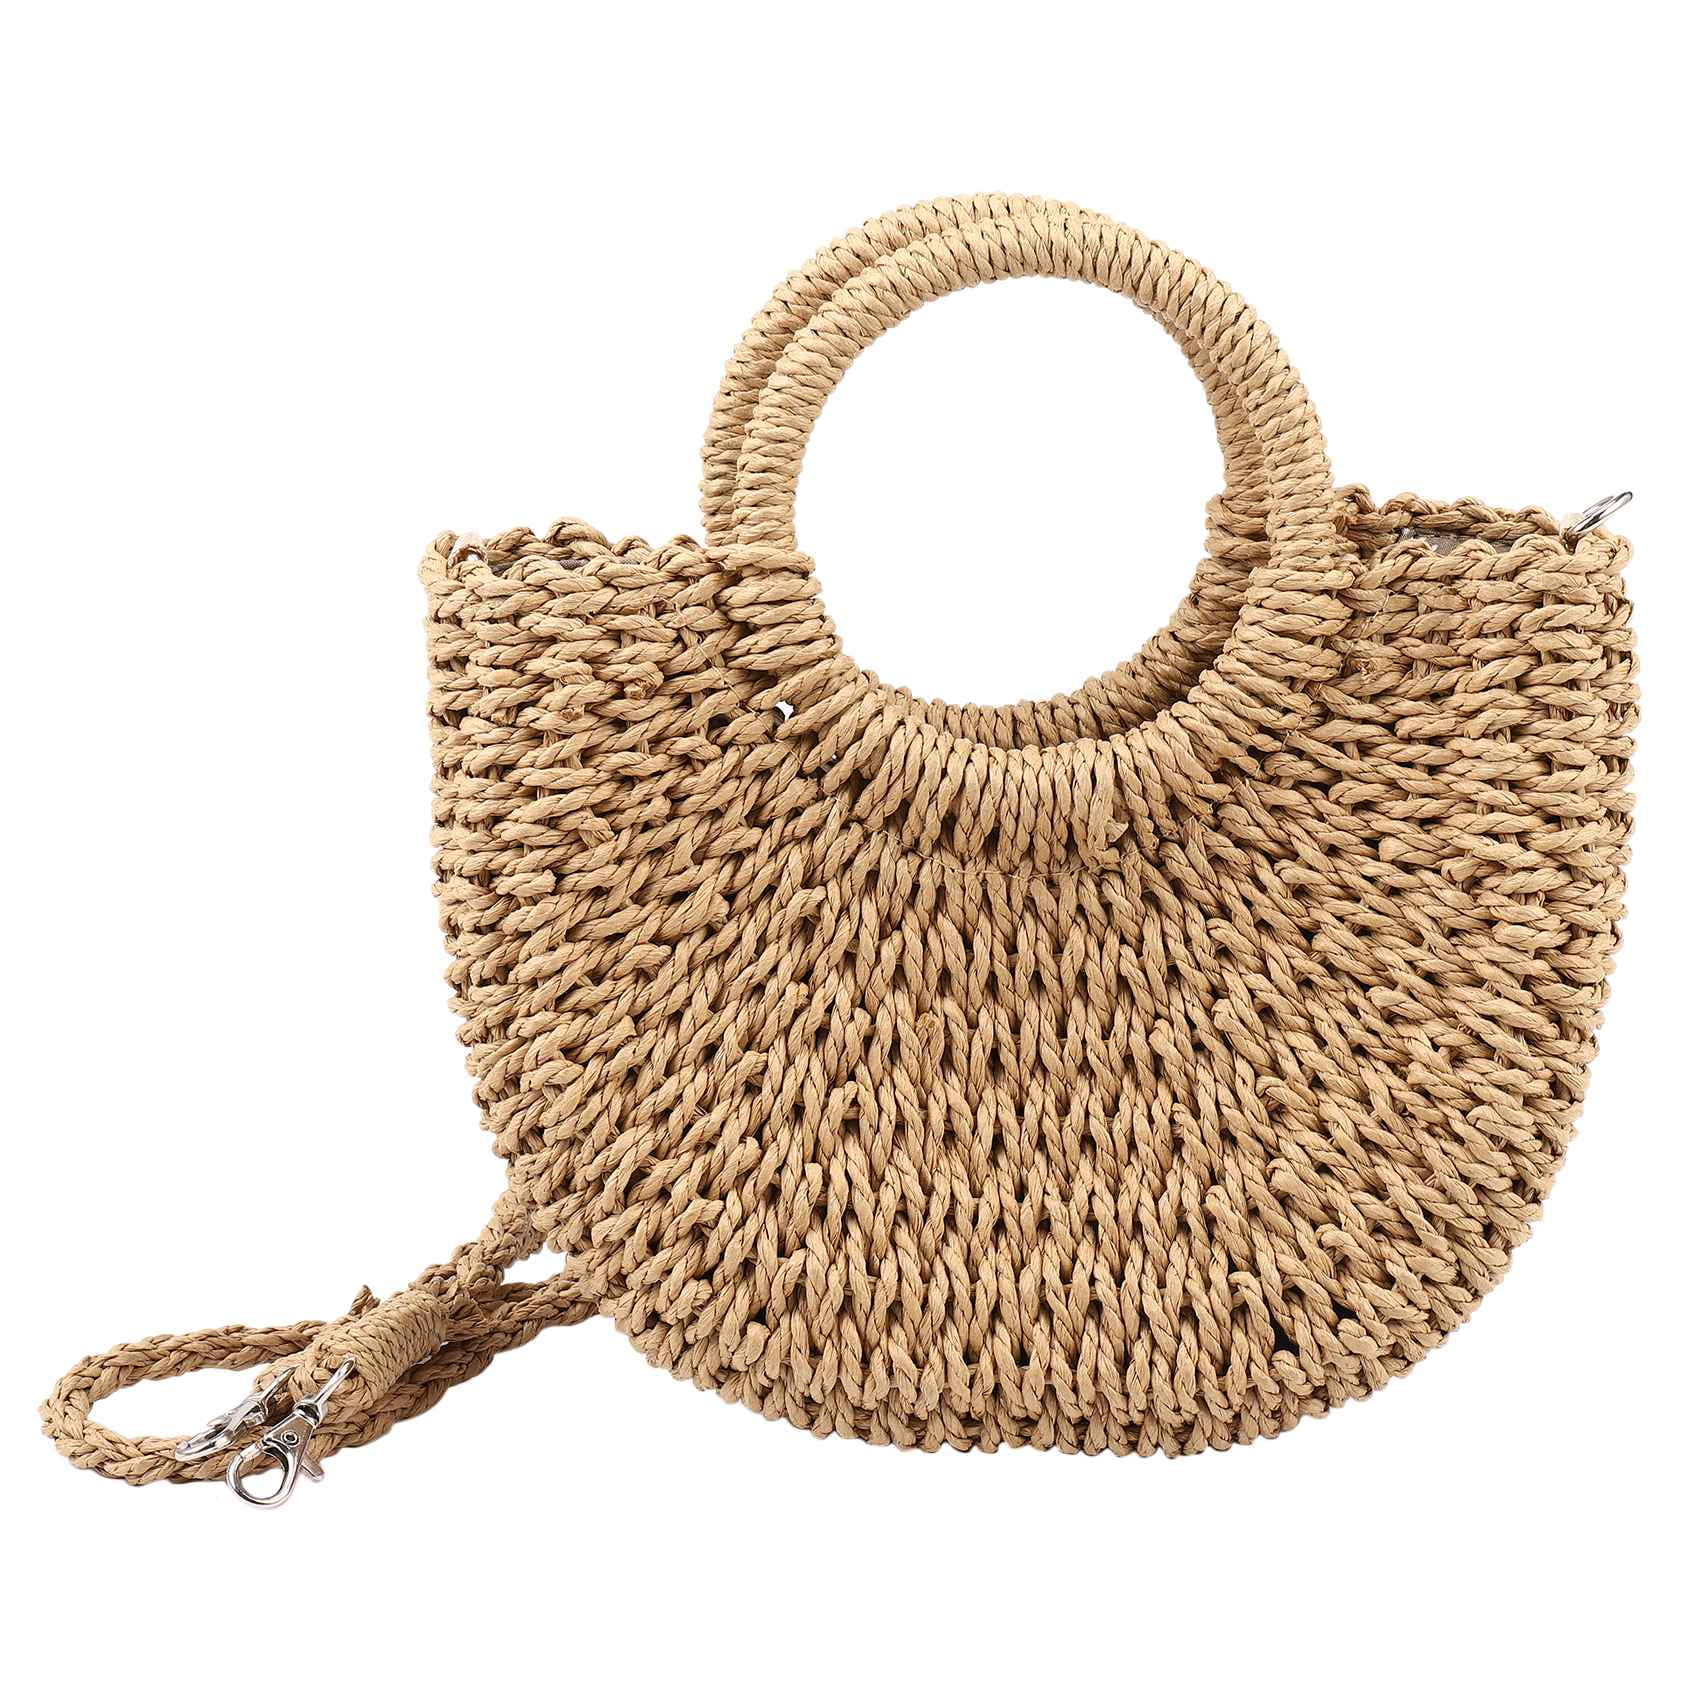 Handmade Rattan Woven Tassel Handbag Vintage Retro Straw Knitted Messenger Bag 